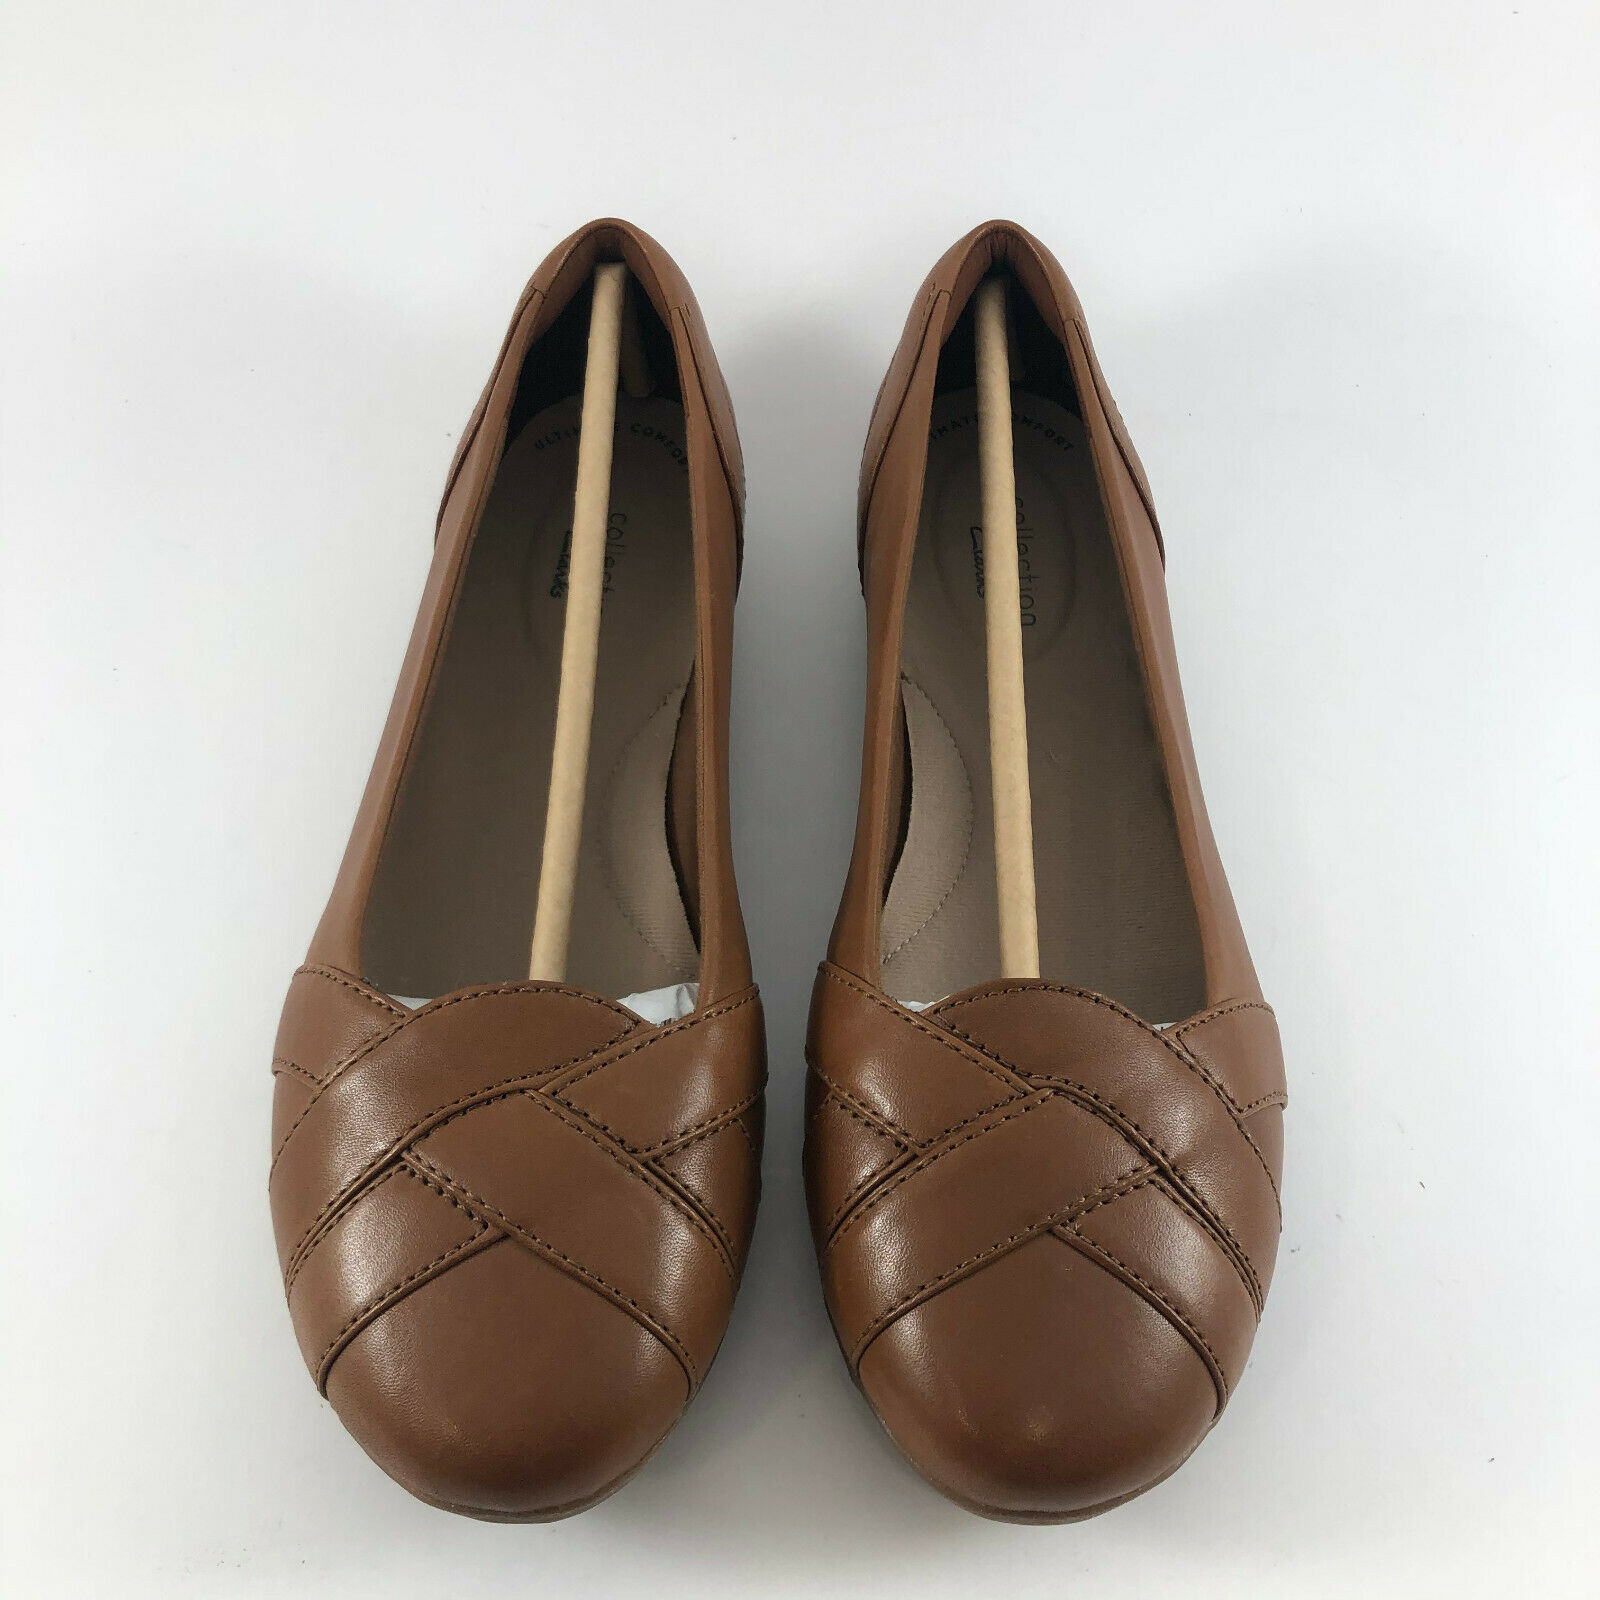 Clarks Gracelin Mia Women's Tan Leather Ballet Casual Flat Shoes - Size 7 W